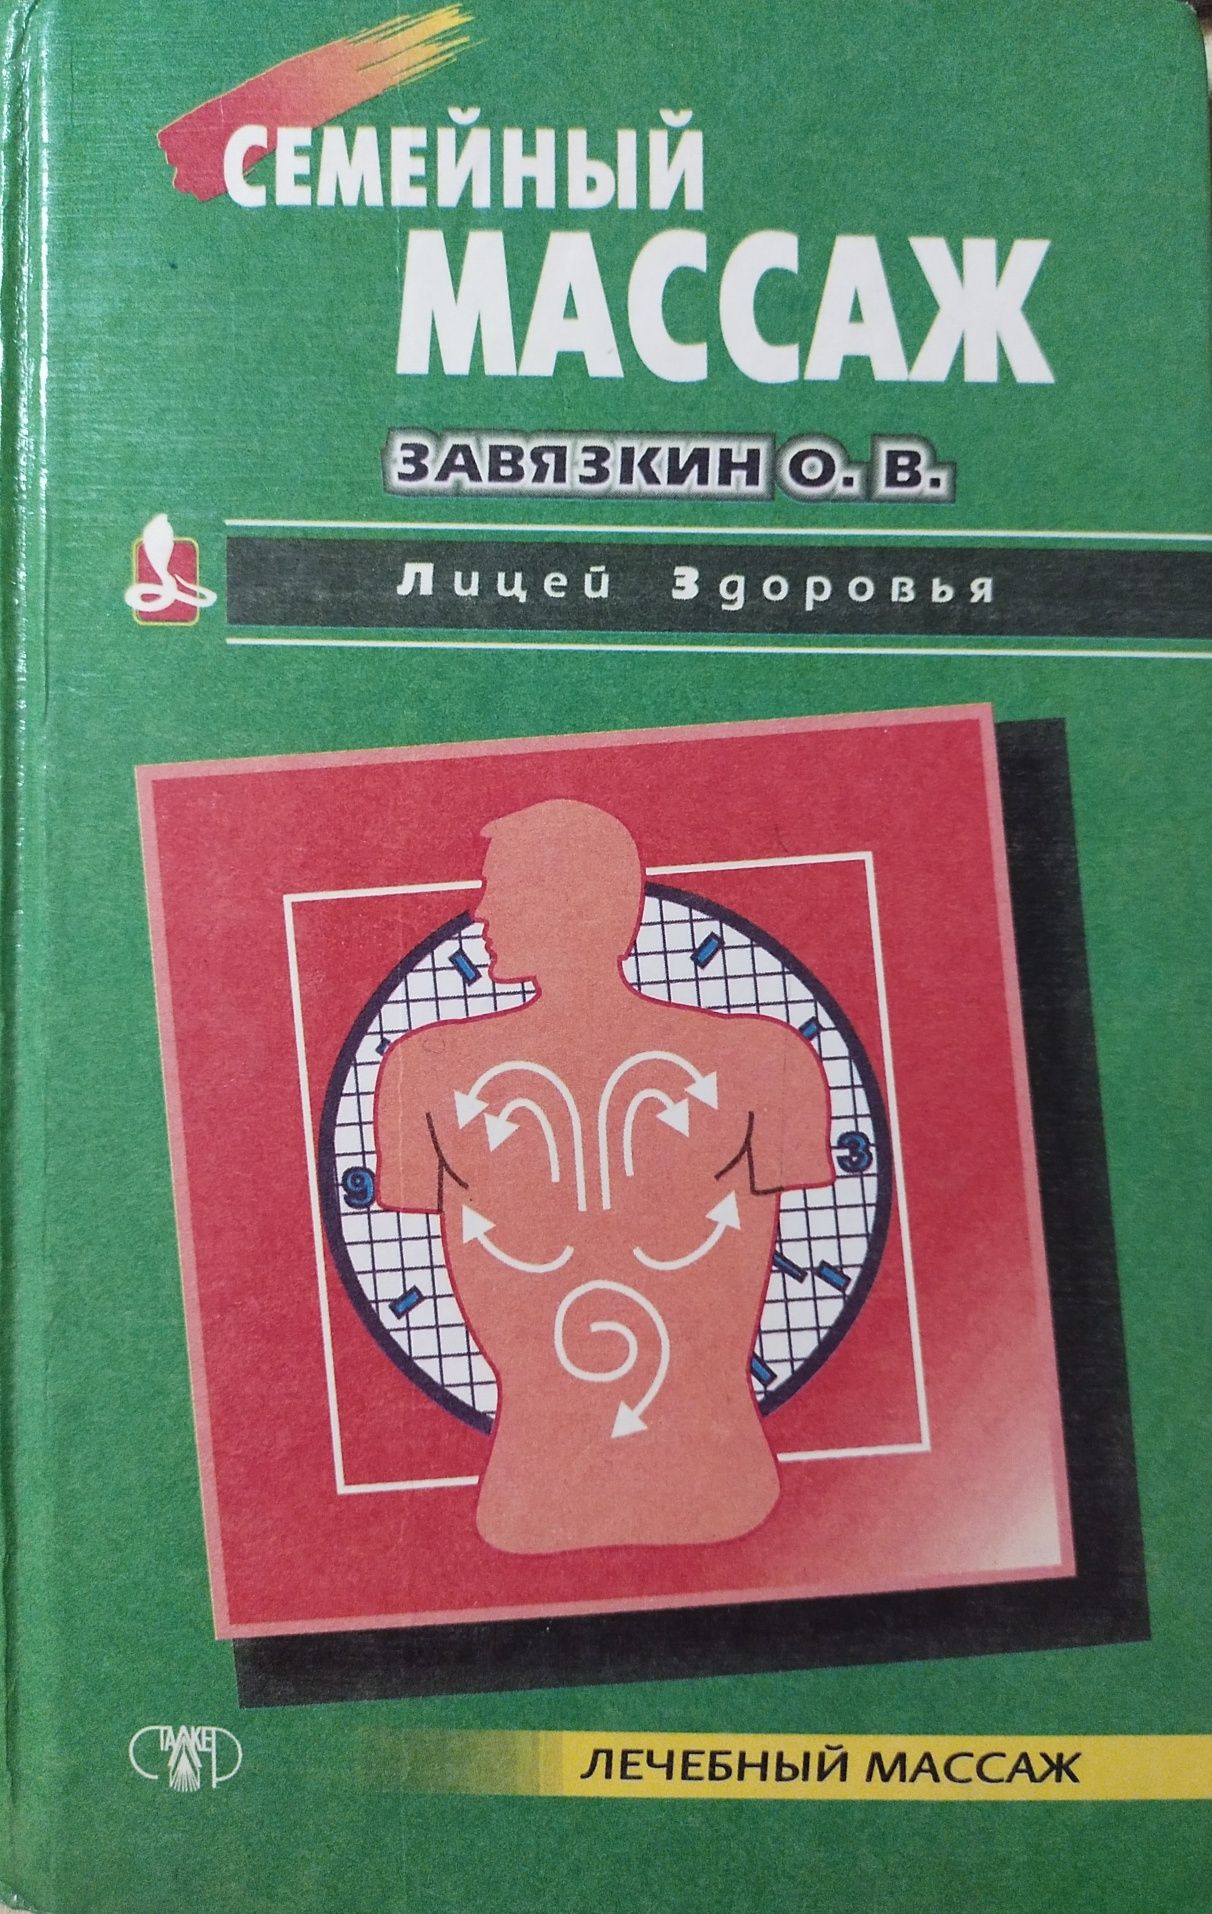 Книга Семейный массаж/Завязкин О.В.